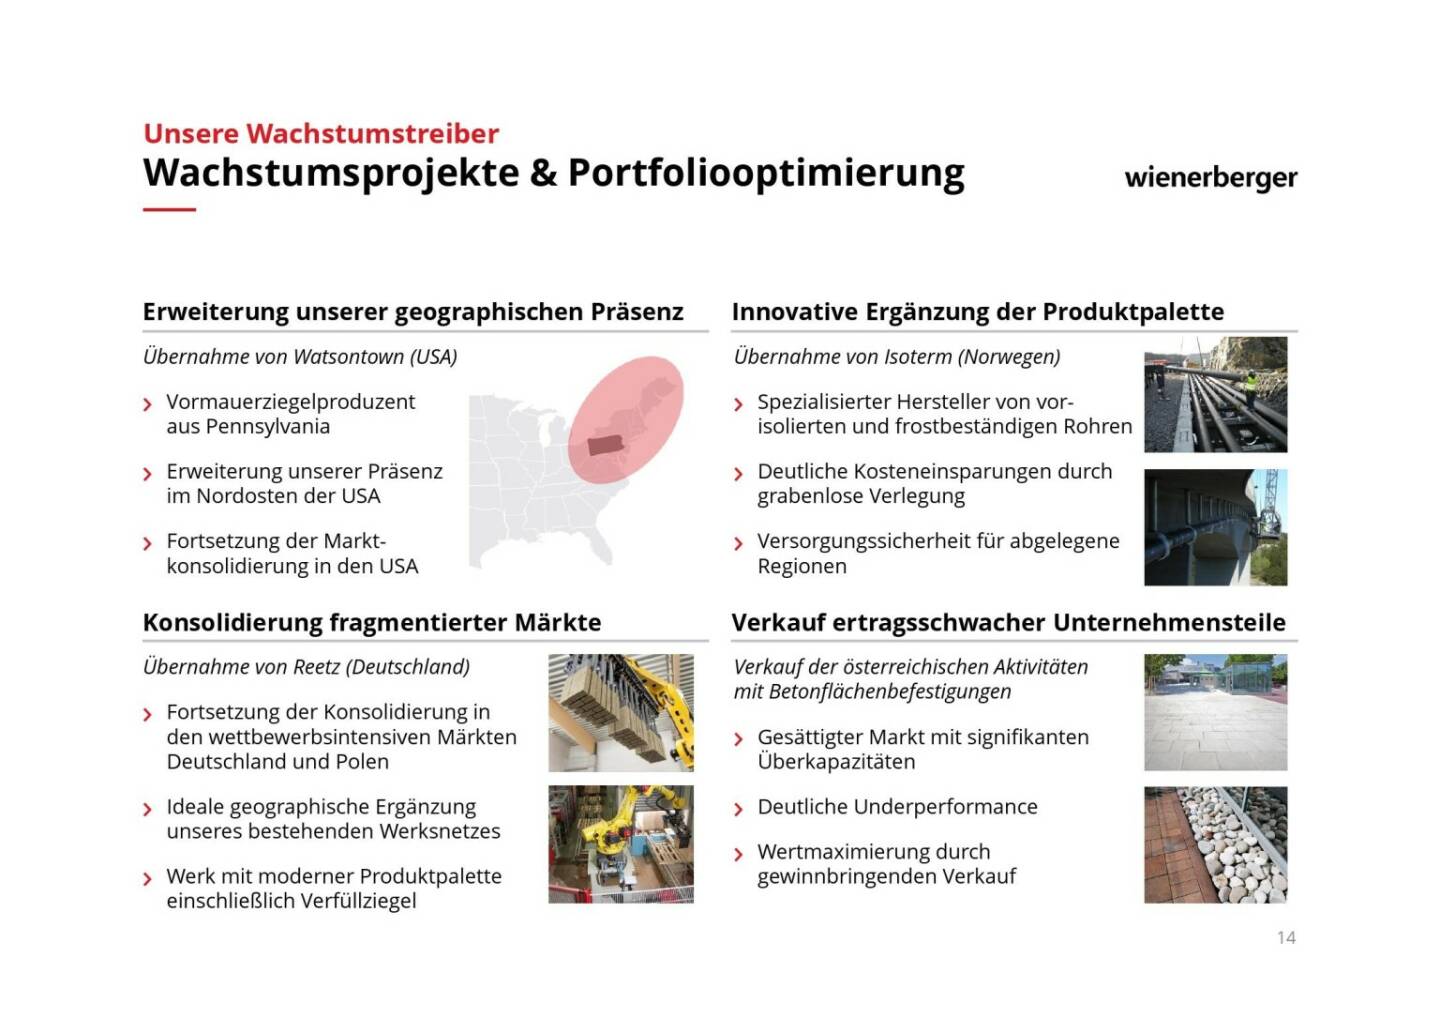 Wienerberger - Wachstumsprojekte & Portfoliooptimierung